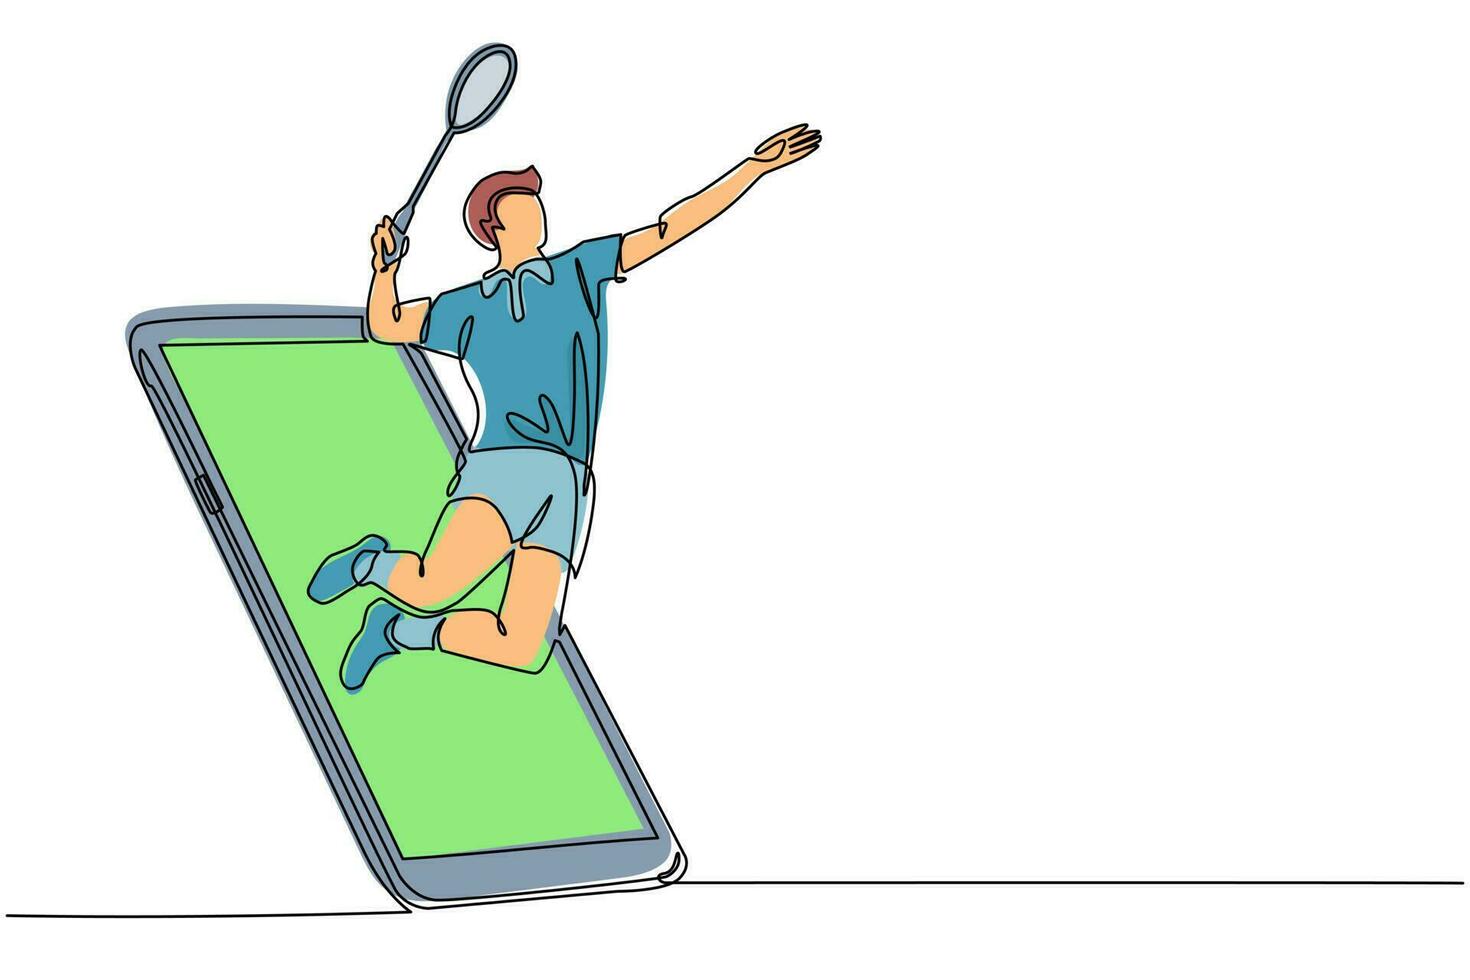 único desenho de linha homem jogador de badminton salto hit peteca saindo da tela do smartphone. jogo de badminton online com aplicativo móvel ao vivo. ilustração em vetor gráfico de desenho de linha contínua